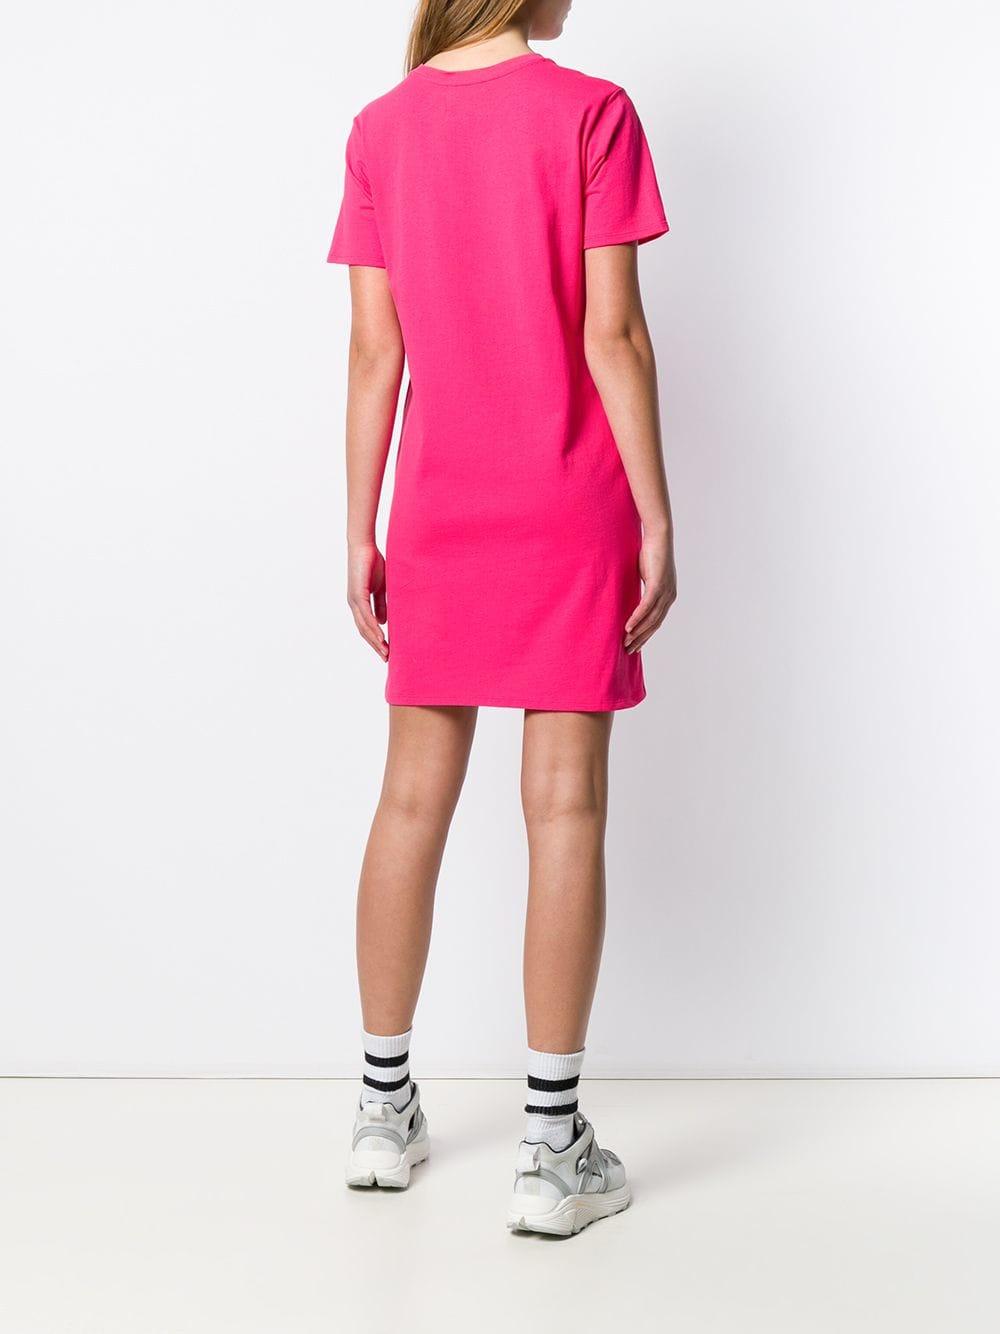 Women's Pink Logo Print T-shirt Dress